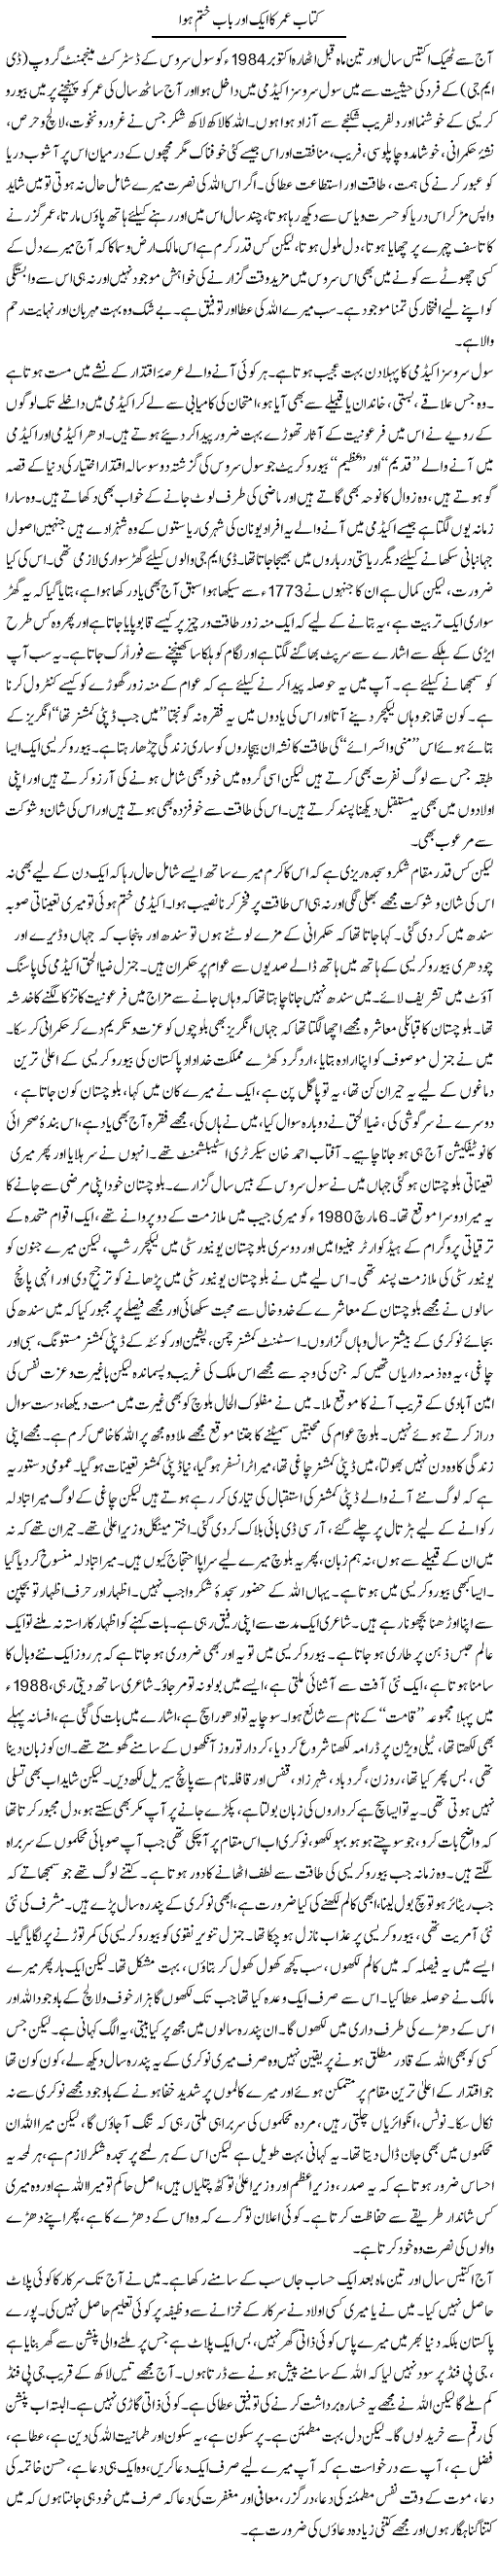 Kitab Umer Ka Aik Aor Baab Khatam Hua | Orya Maqbool Jan | Daily Urdu Columns